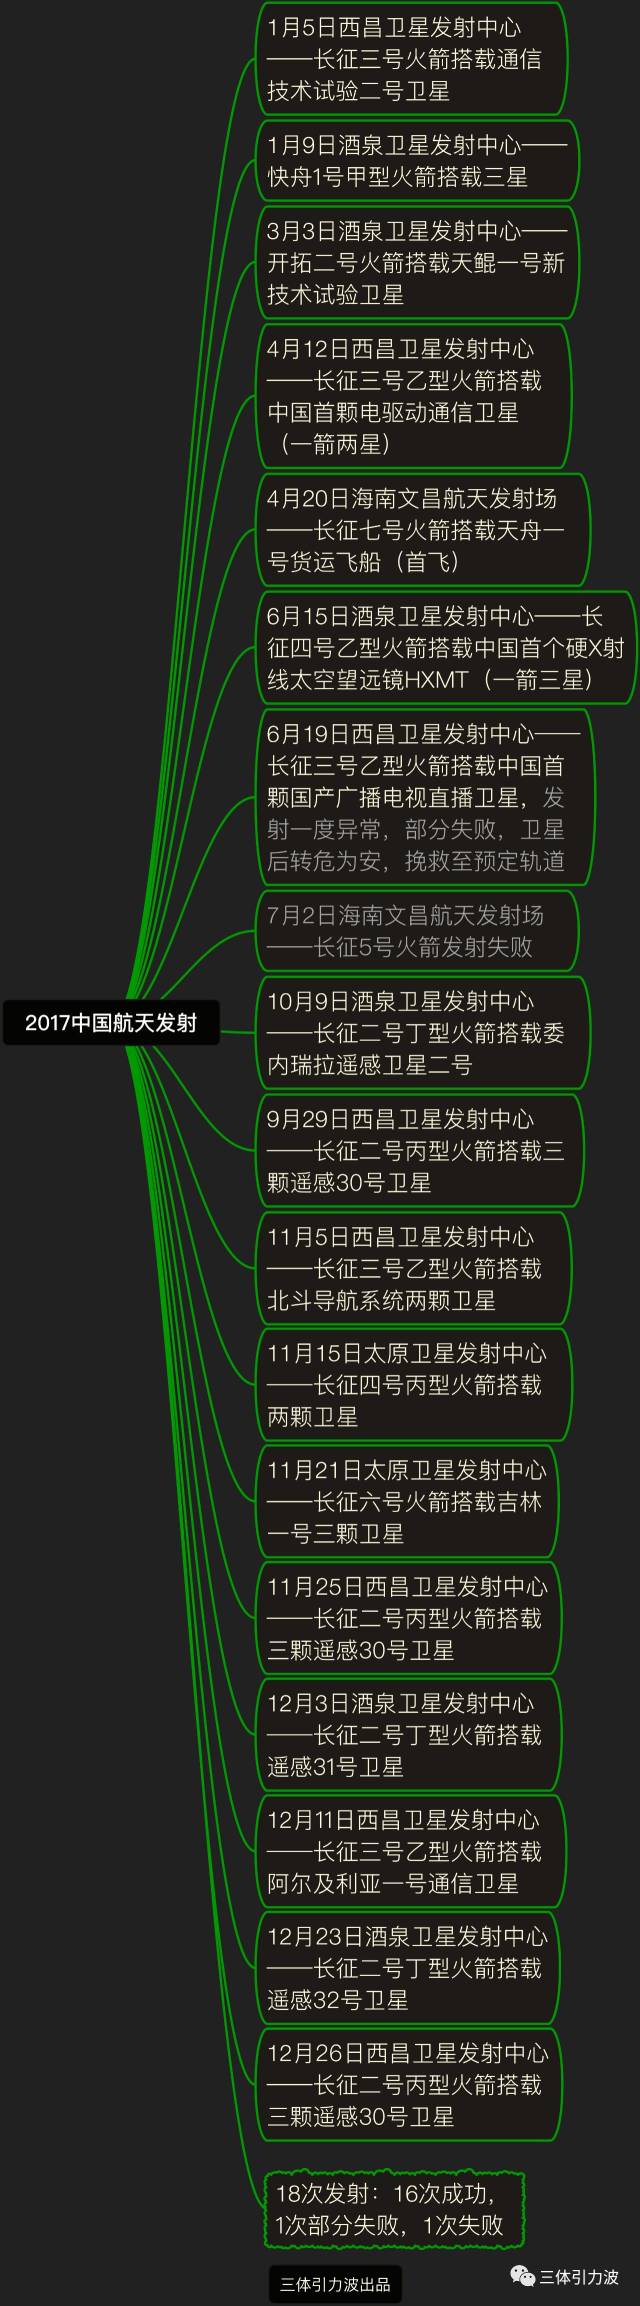 2018中国航天发射线路图:登月大年,民营元年